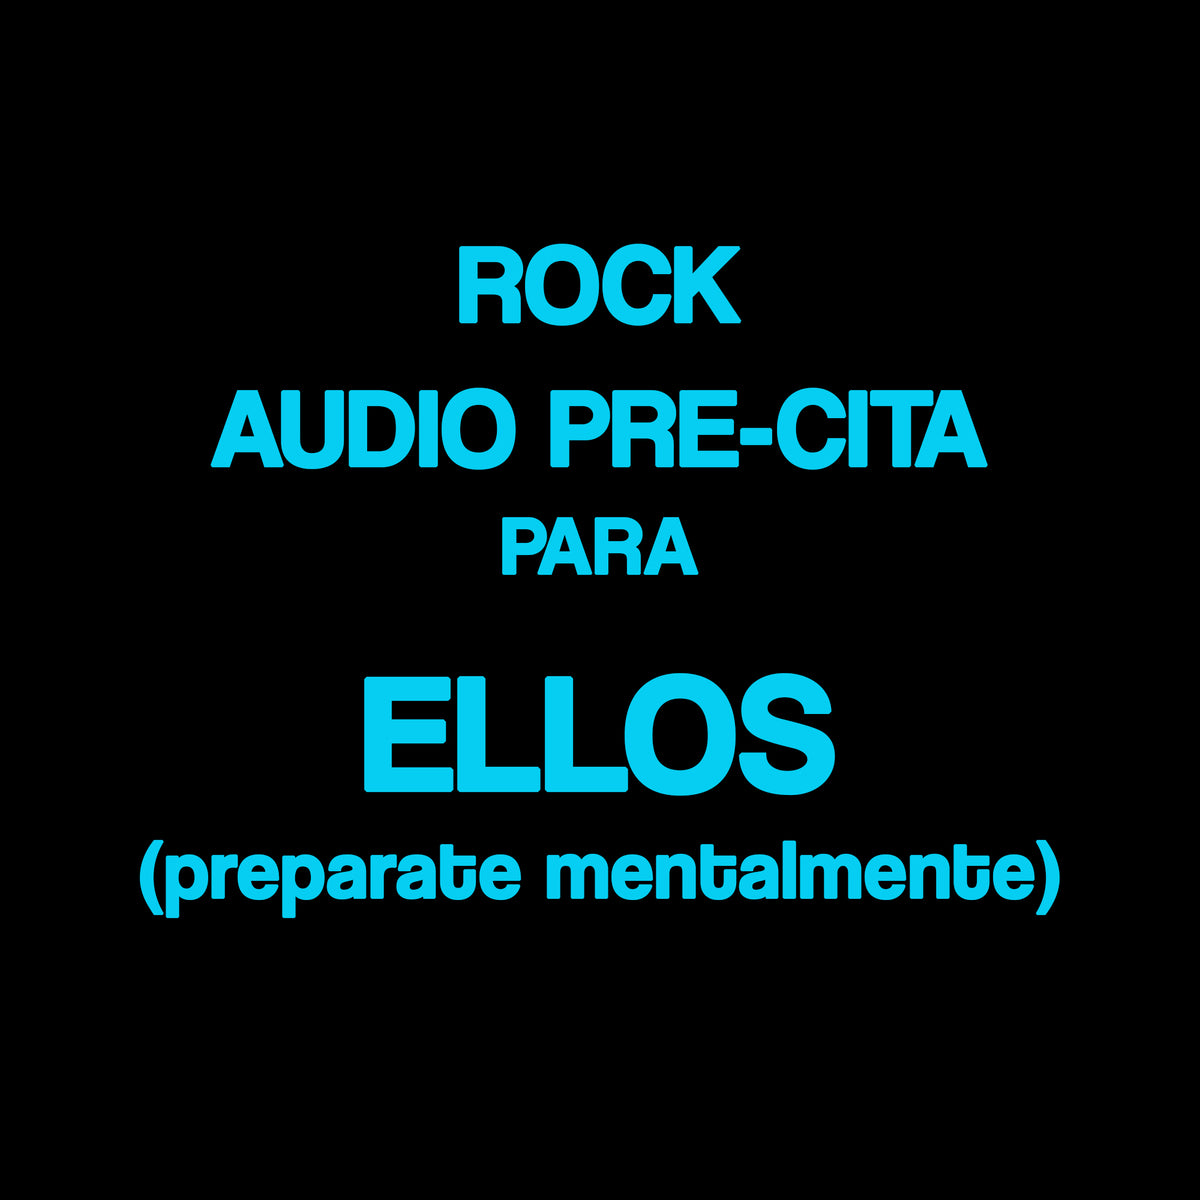 Rock - Audio pre cita para ellos. PREPARATE MENTALMENTE